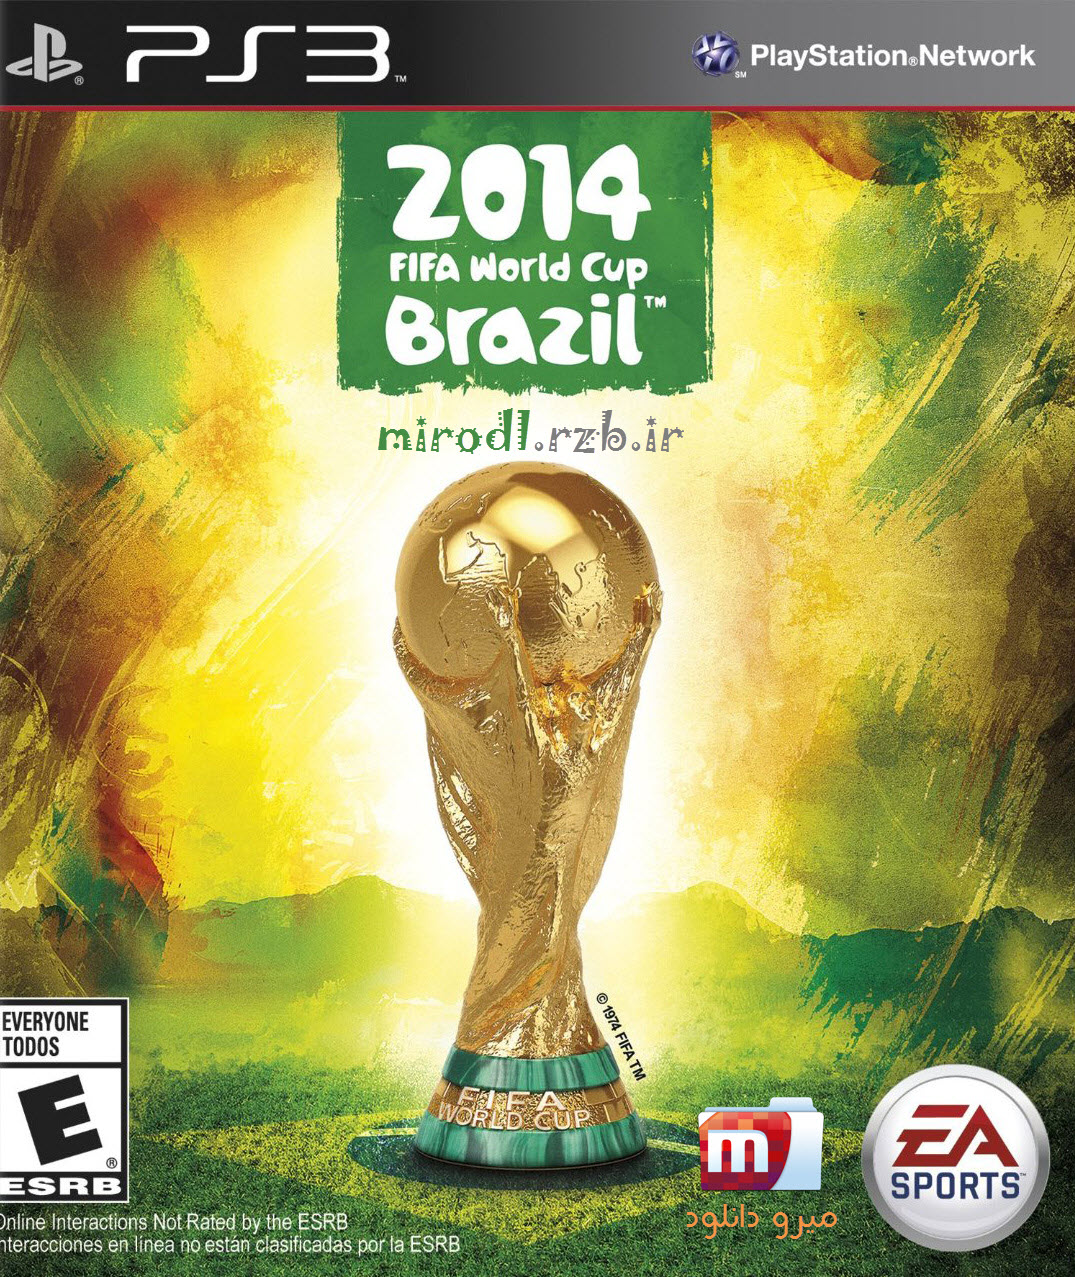  دانلود بازی ۲۰۱۴ FIFA World Cup Brazil برای PS3 